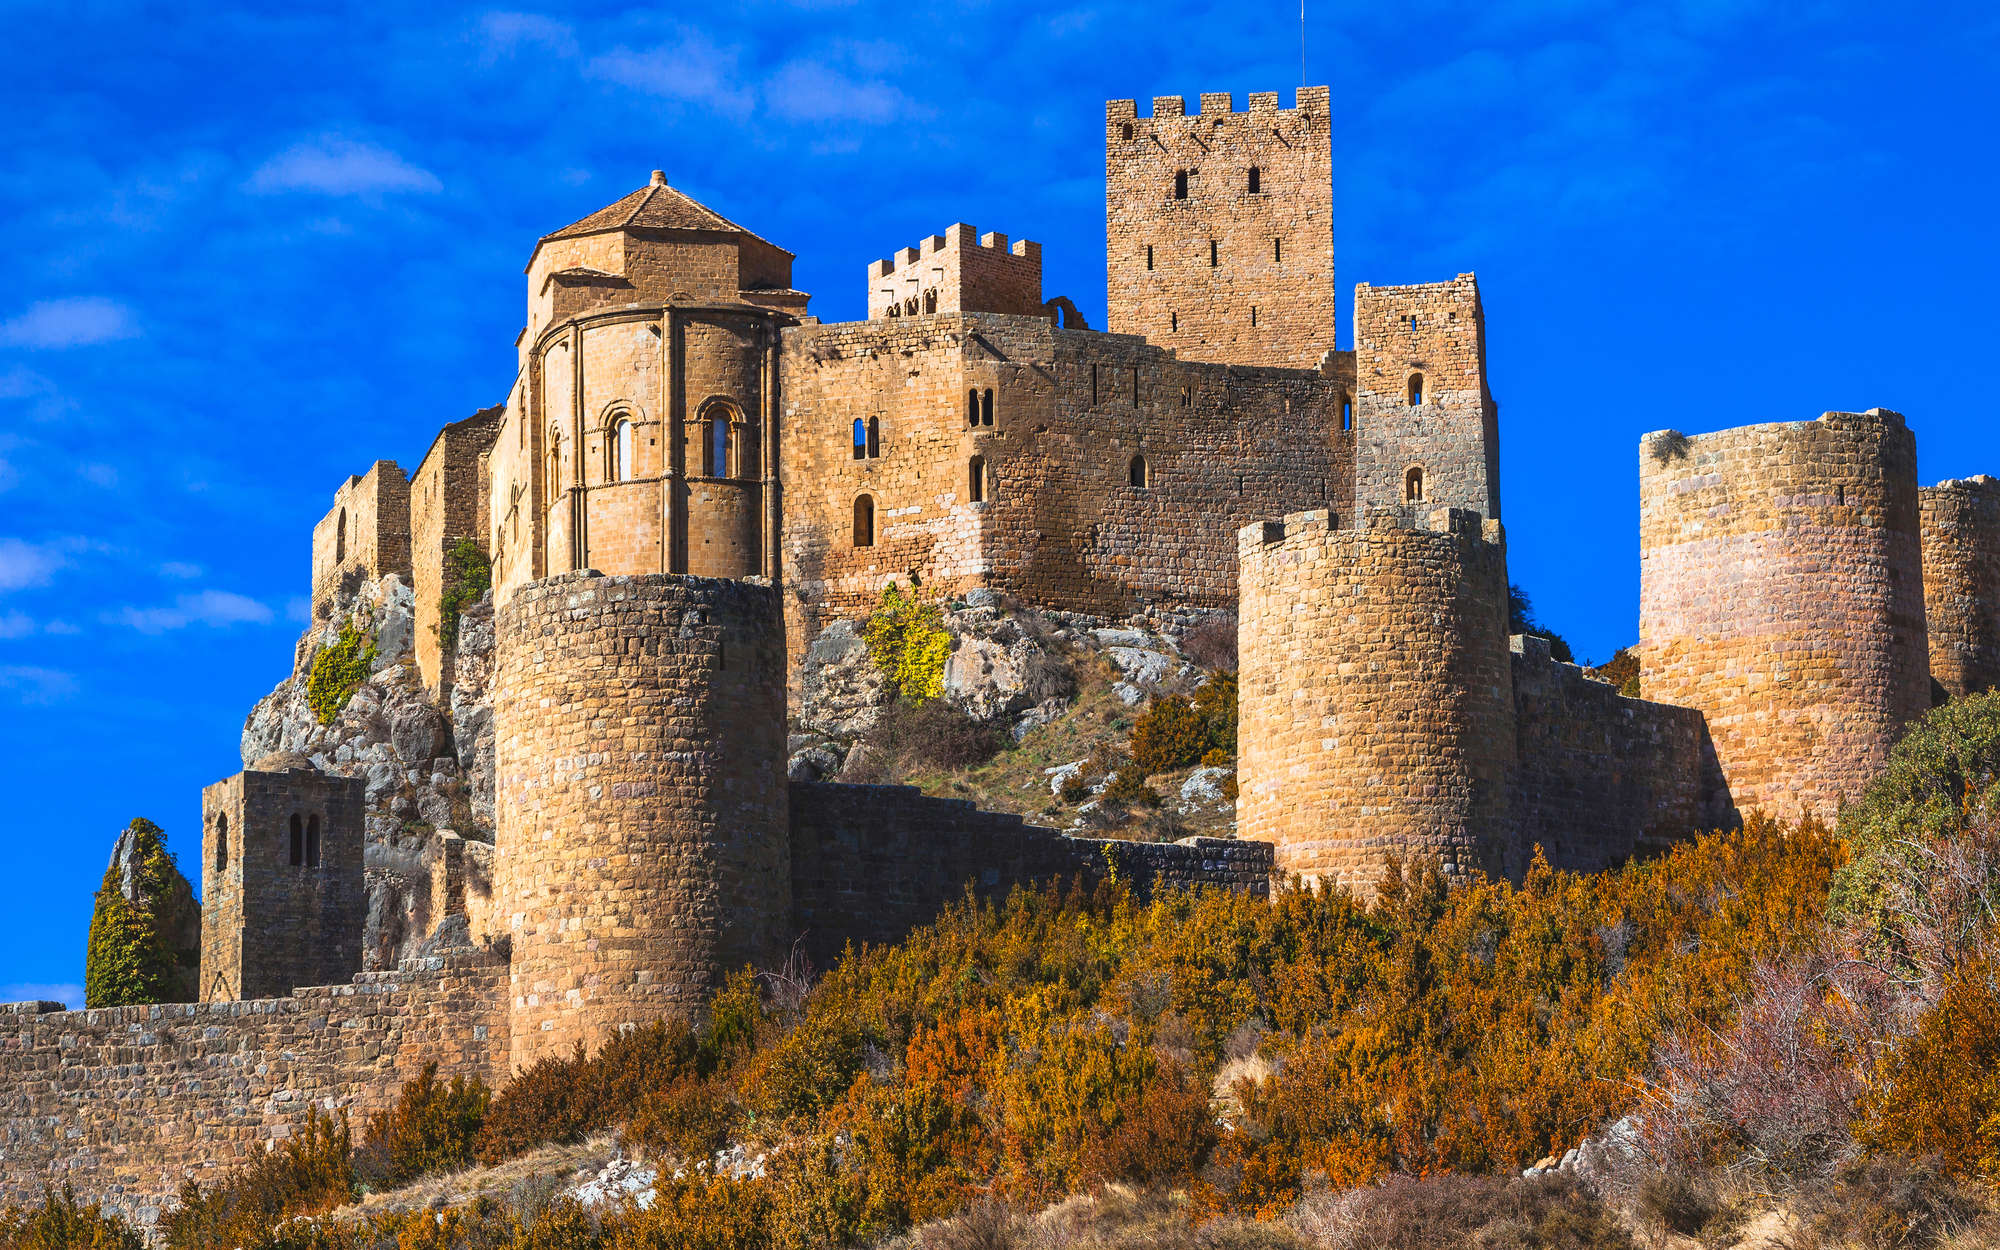             Digital behang Oud kasteel met stenen muur - structuurvlies
        